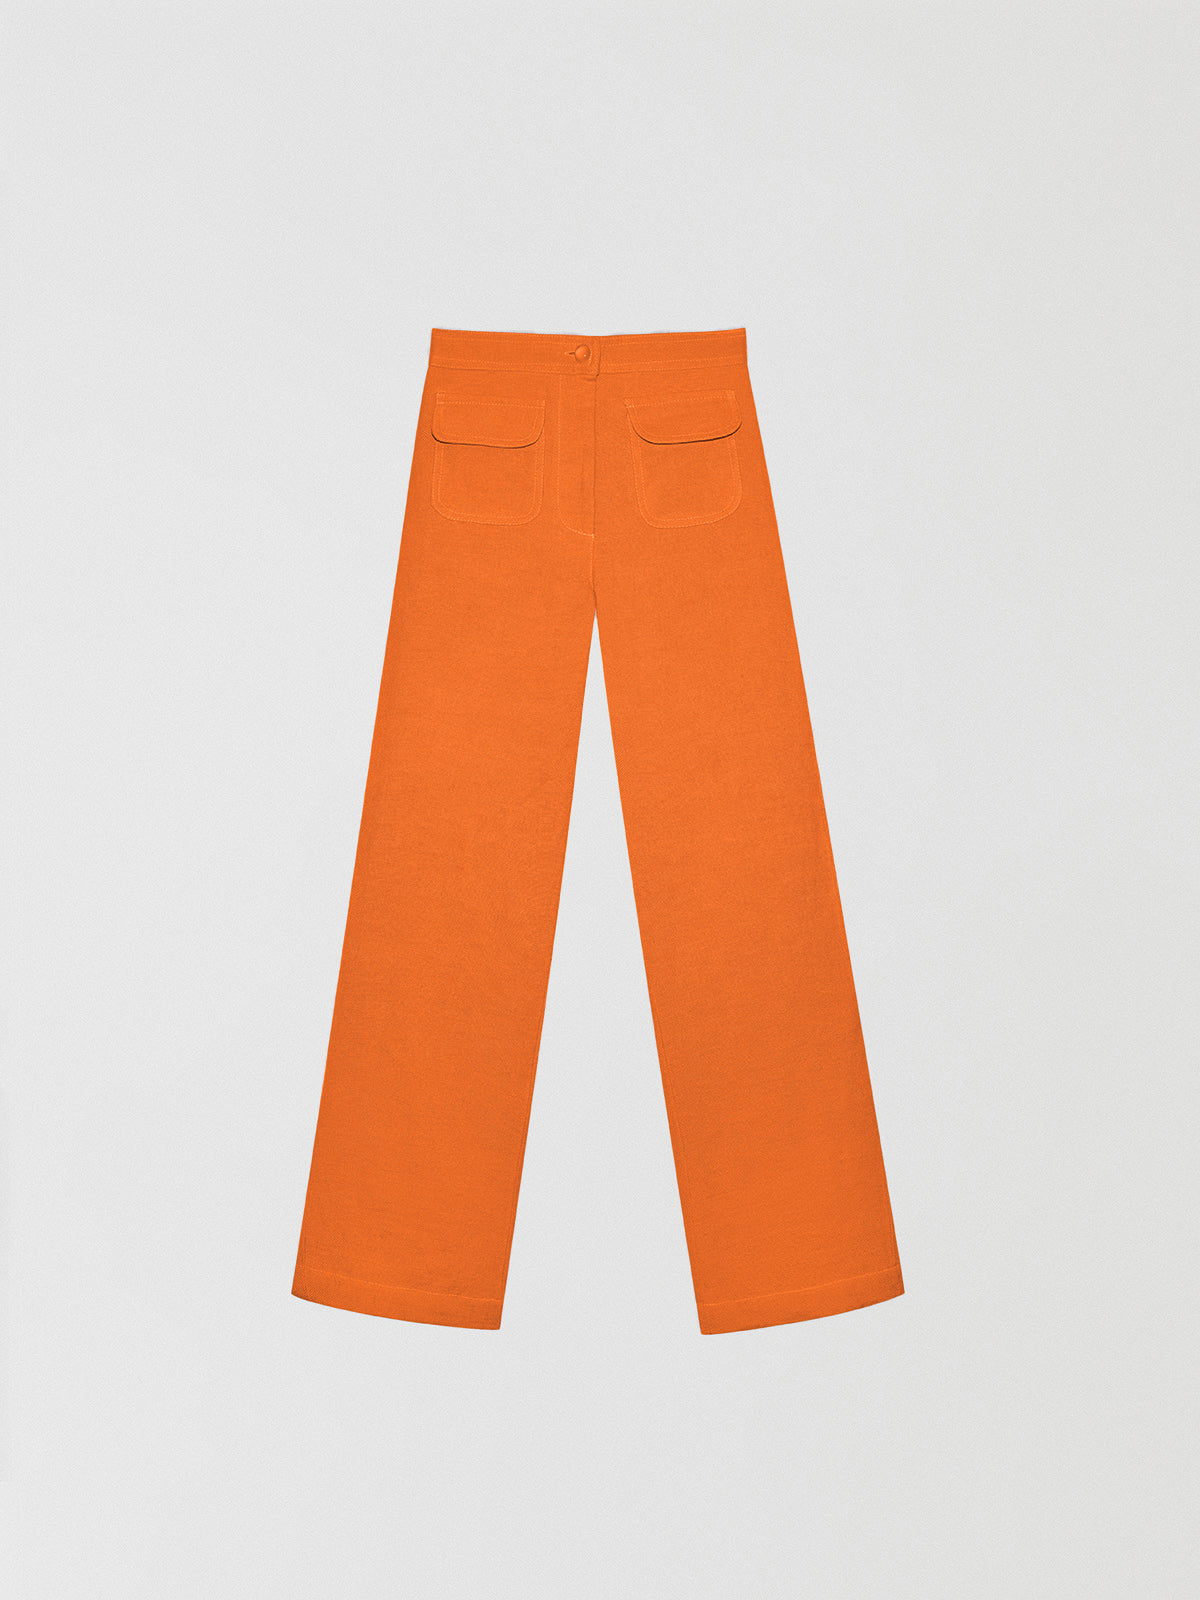 Loto Orange Pants – La Veste